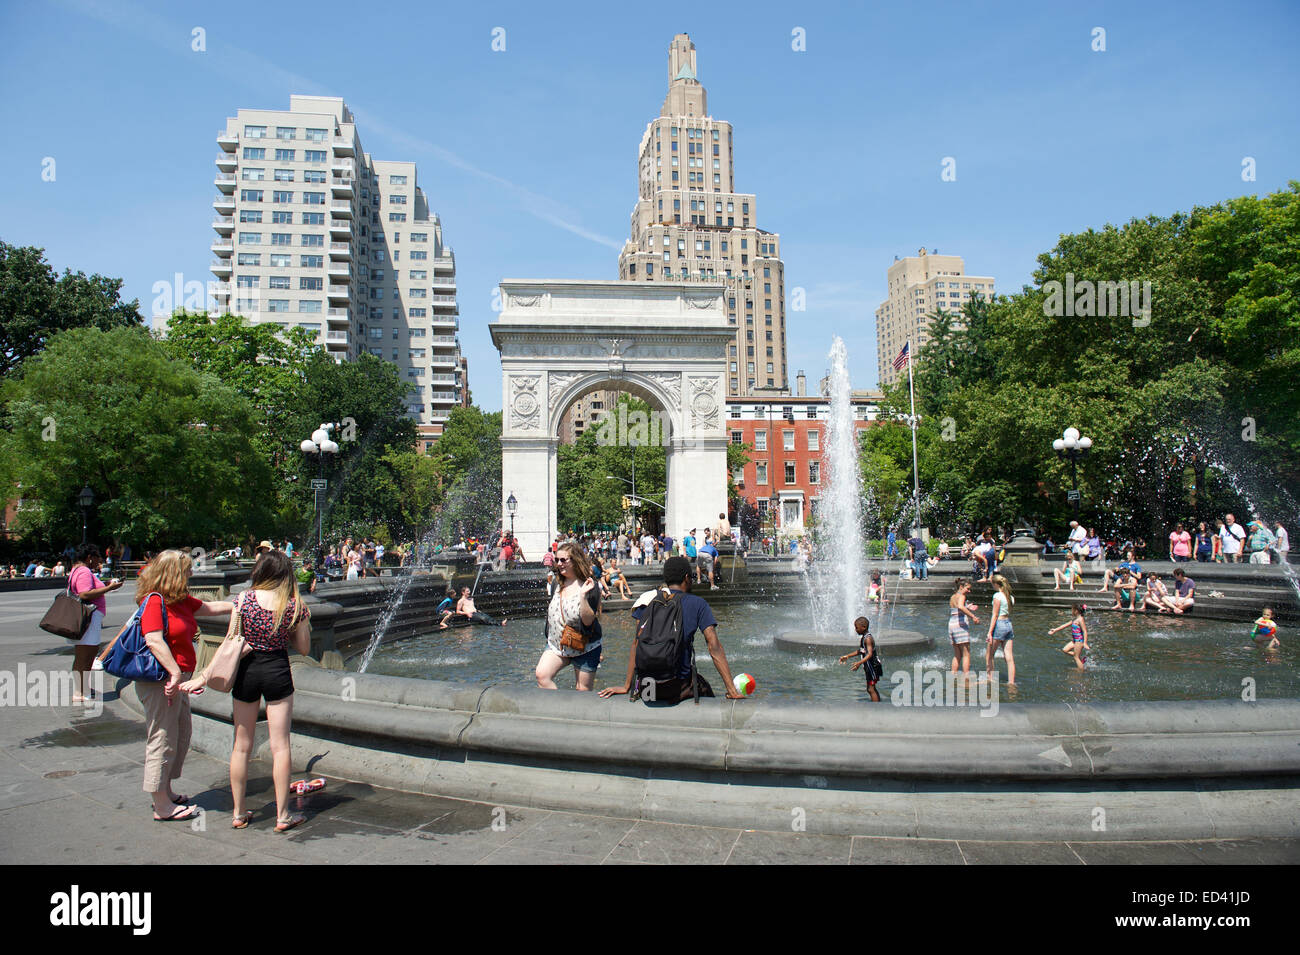 La VILLE DE NEW YORK, USA - Juin 2014 : Les gens se rassemblent à la fontaine à Washington Square Park sur un bel après-midi d'été. Banque D'Images